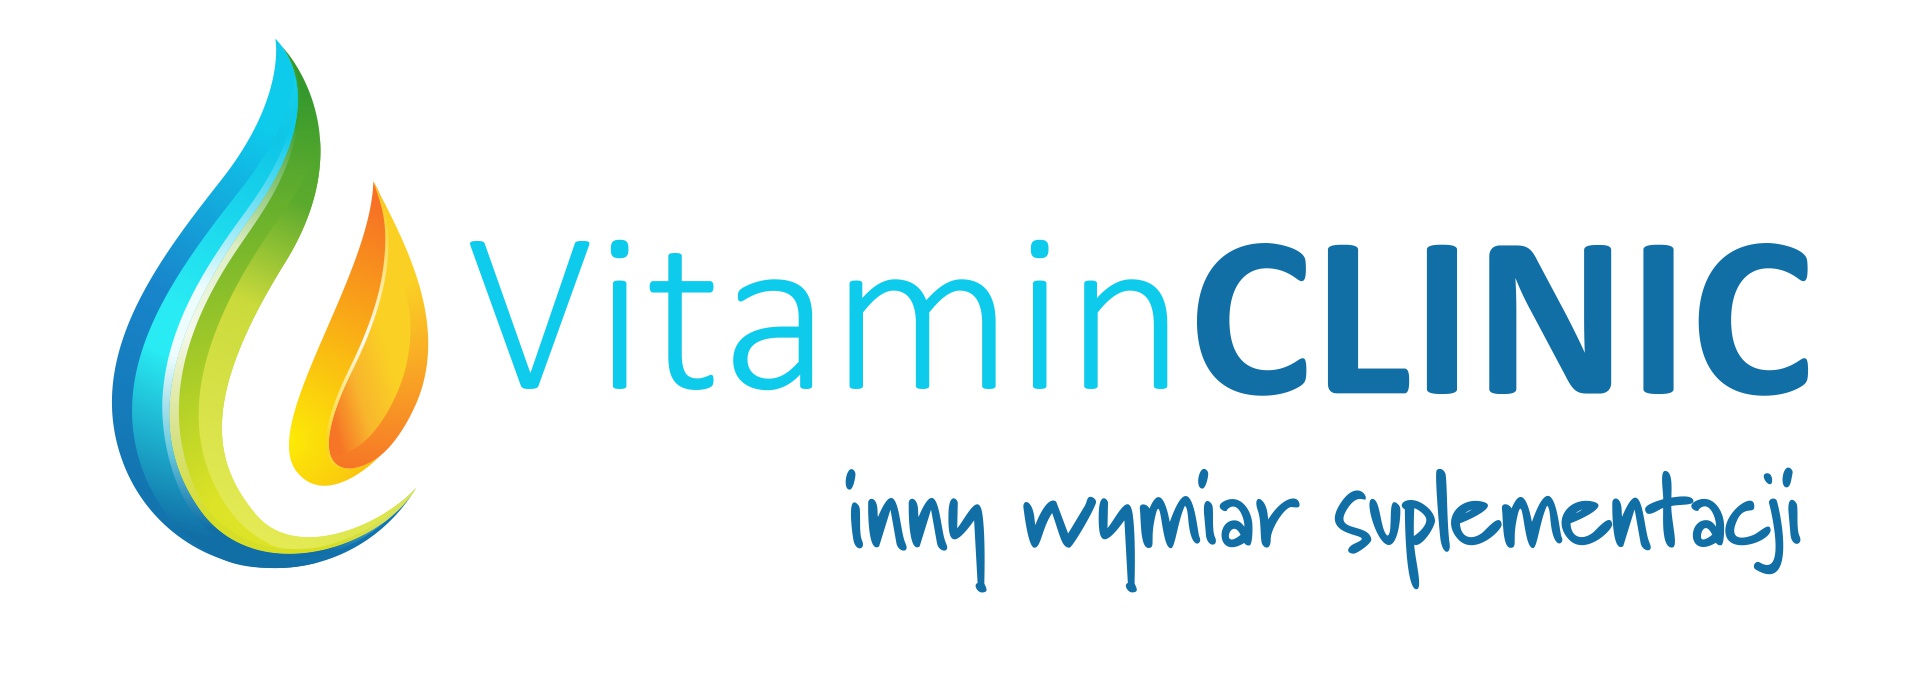 Logo Vitamin Clinic - Inny wymiar suplementacji. Klinika witaminowa.